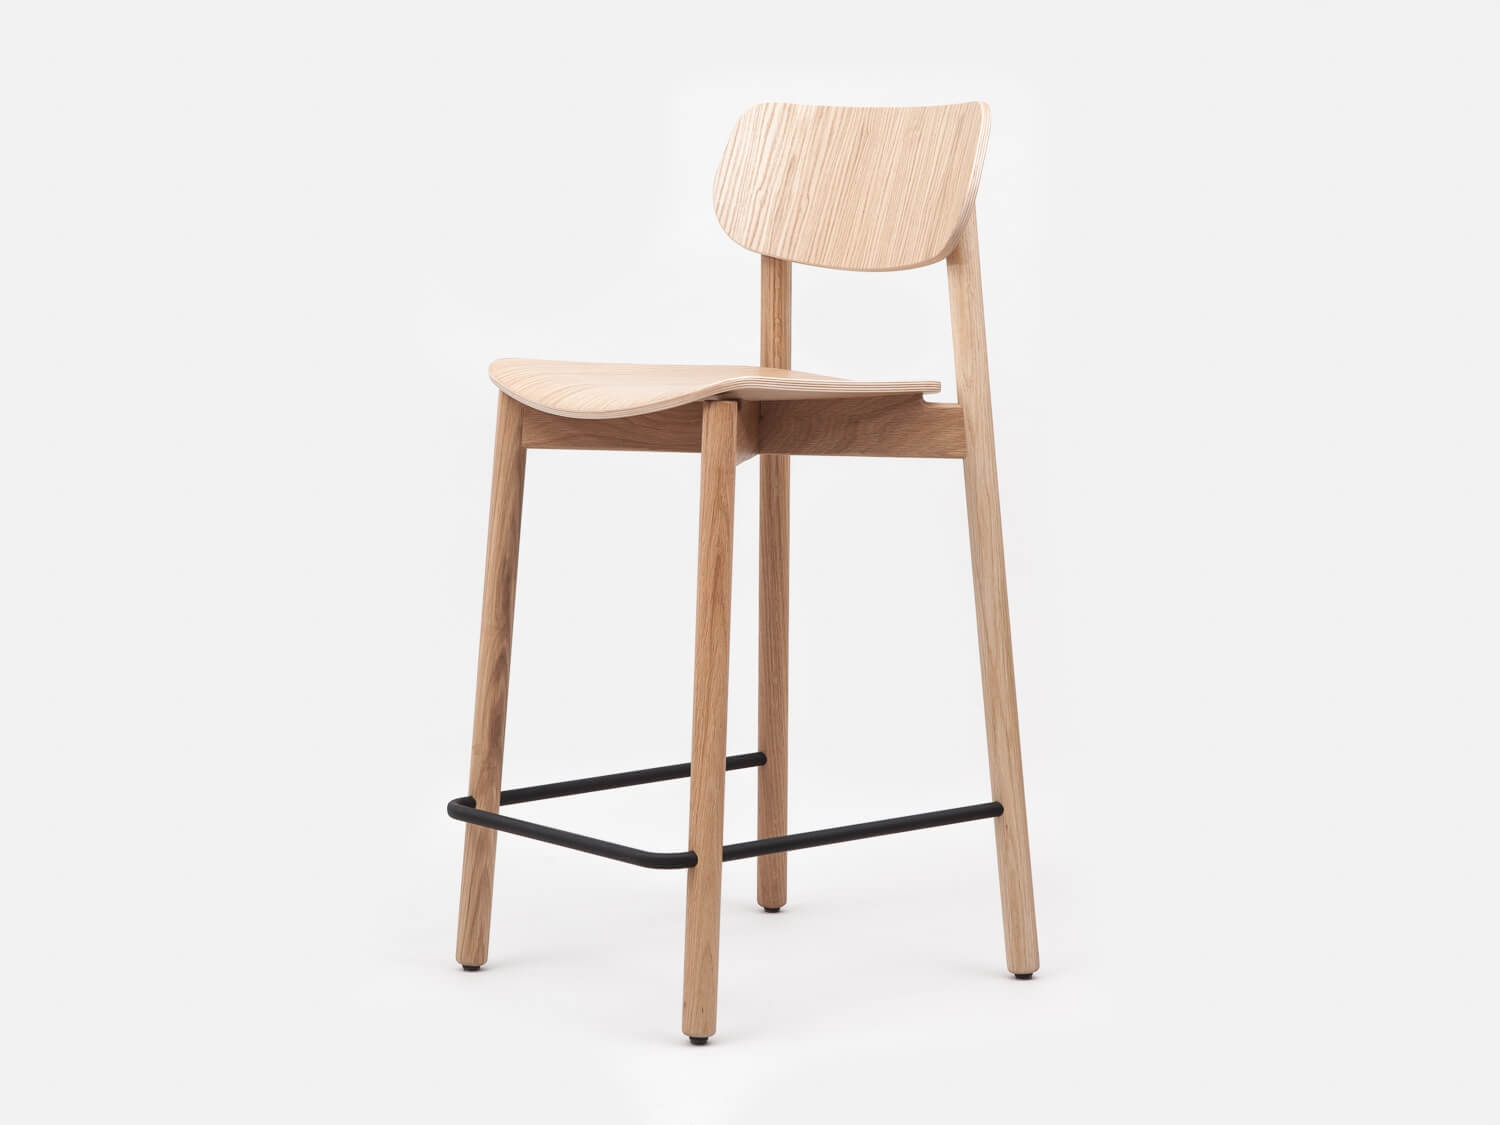 OTIS stool